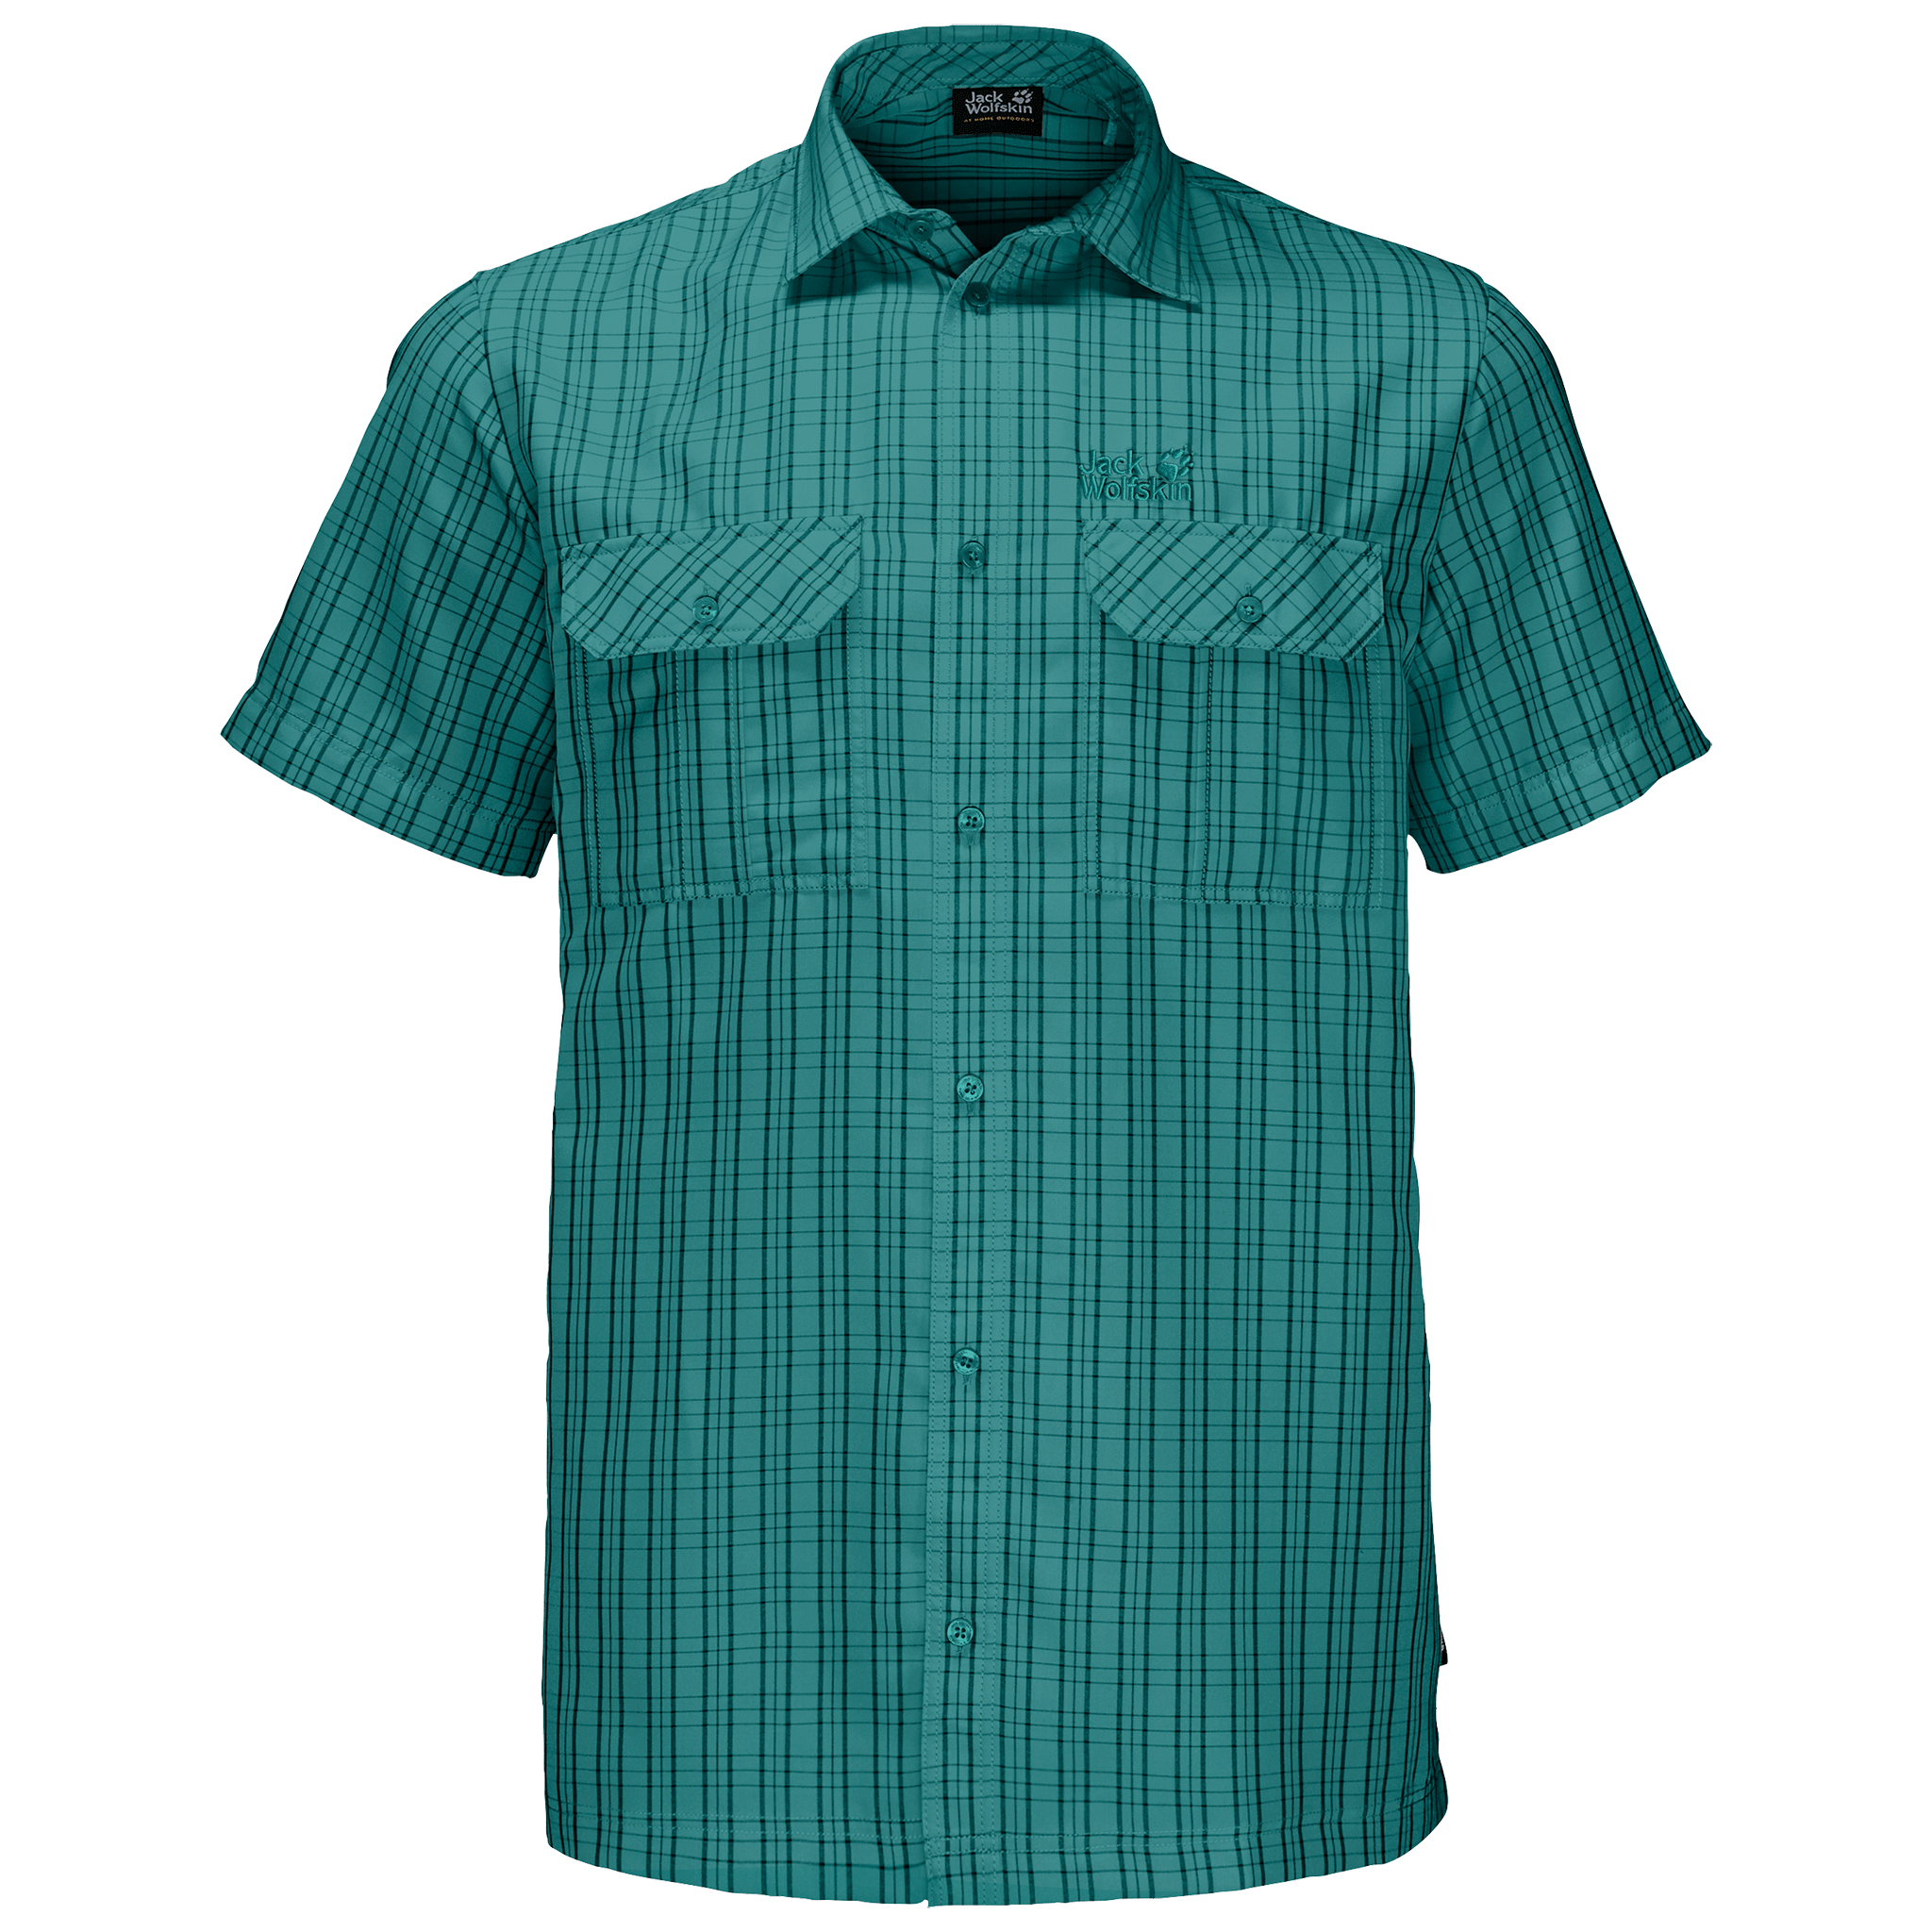 Emerald Green Checks Lightweight T-Shirt